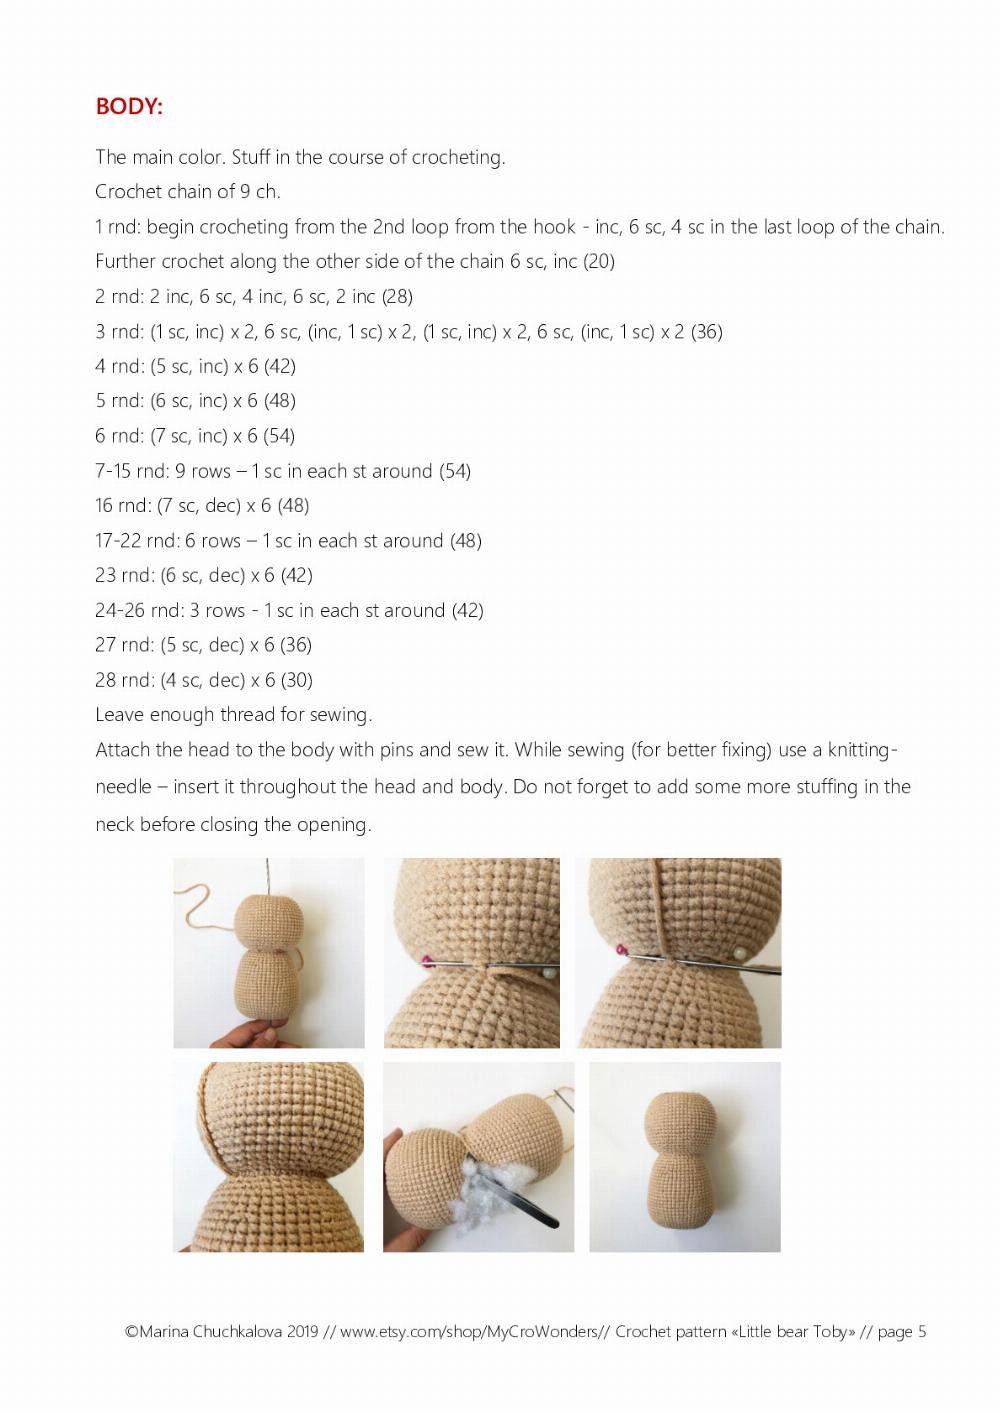 LITTLE BEAR TOBY crochet toy pattern